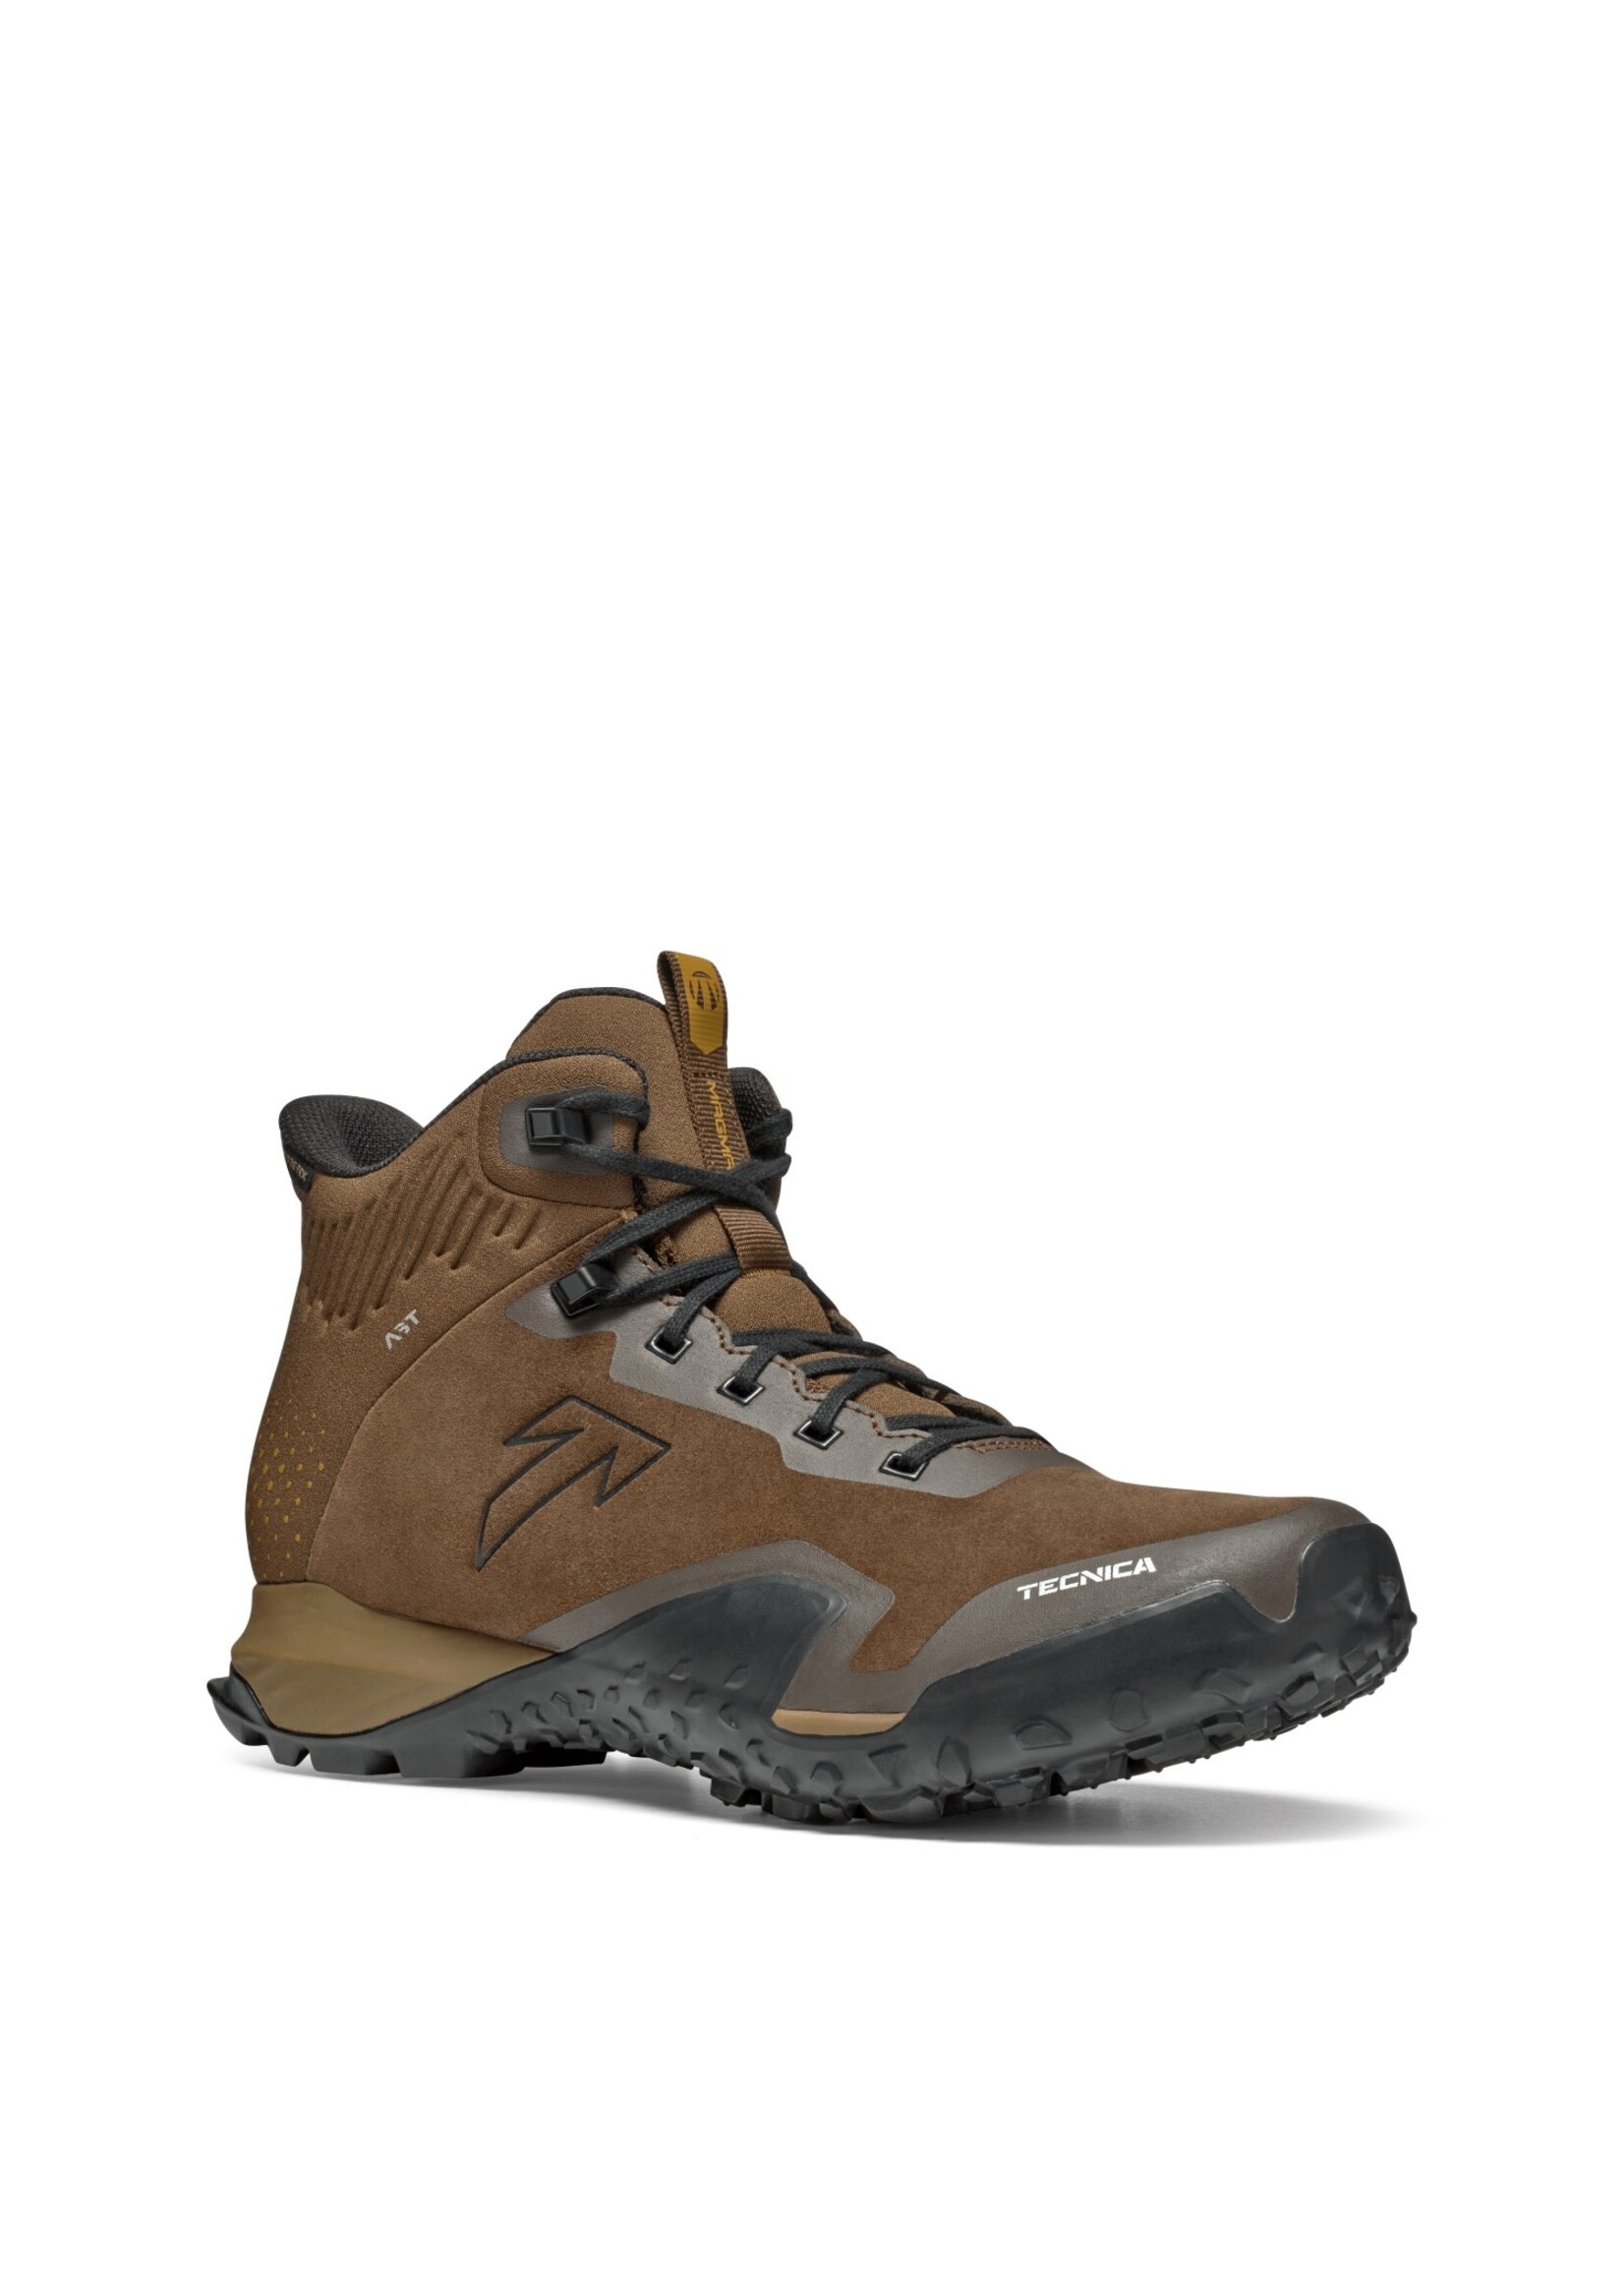 Tecnica Tecnica Magma 2.0 Mid GTX Hiking Boots - Men